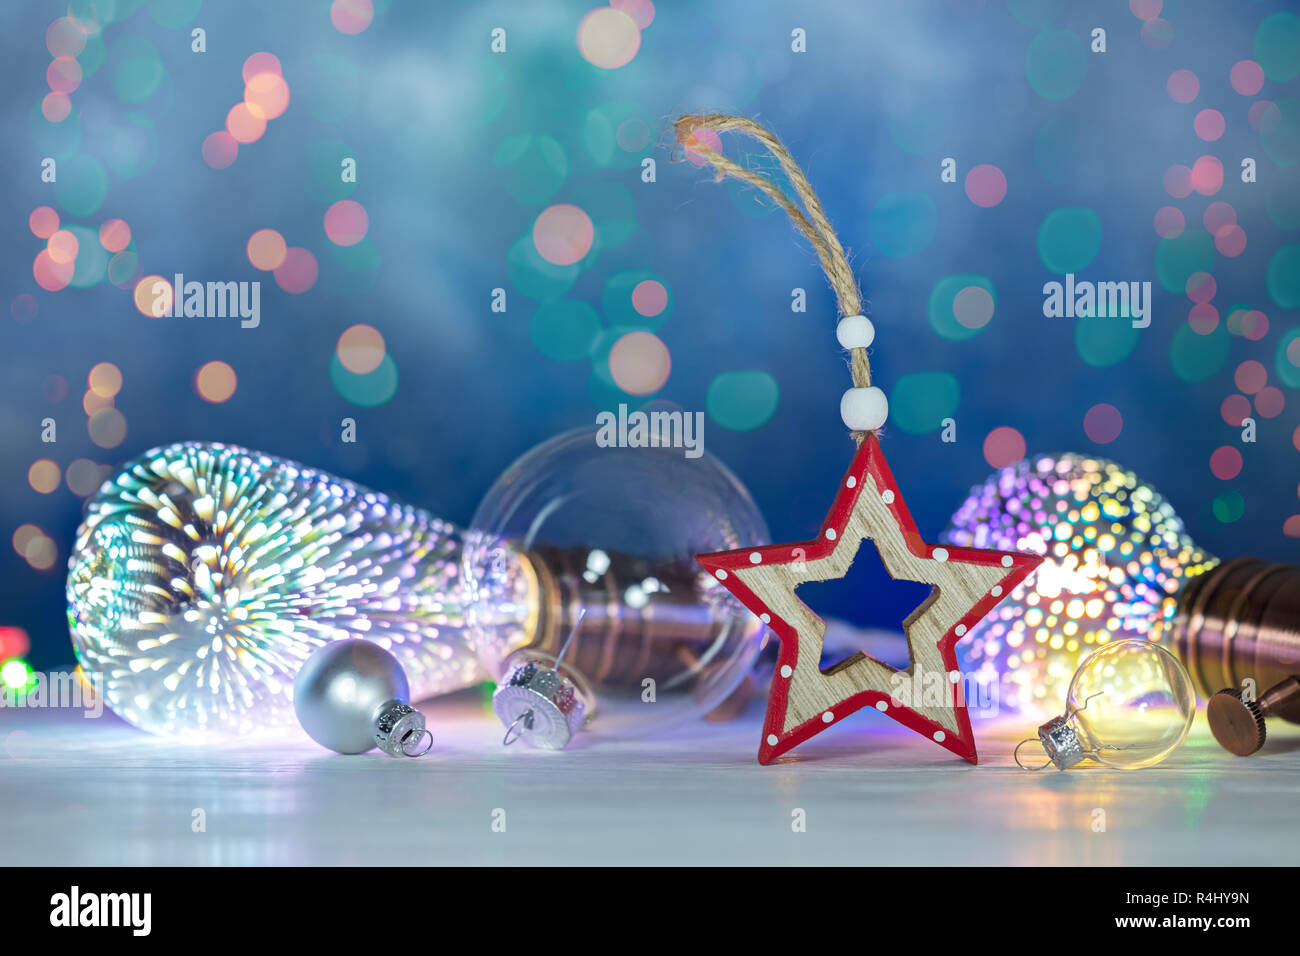 Fondo de navidad con retro-iluminación decorativa, bolas de árbol de navidad y año nuevo estrella de madera fondo festivo Foto de stock